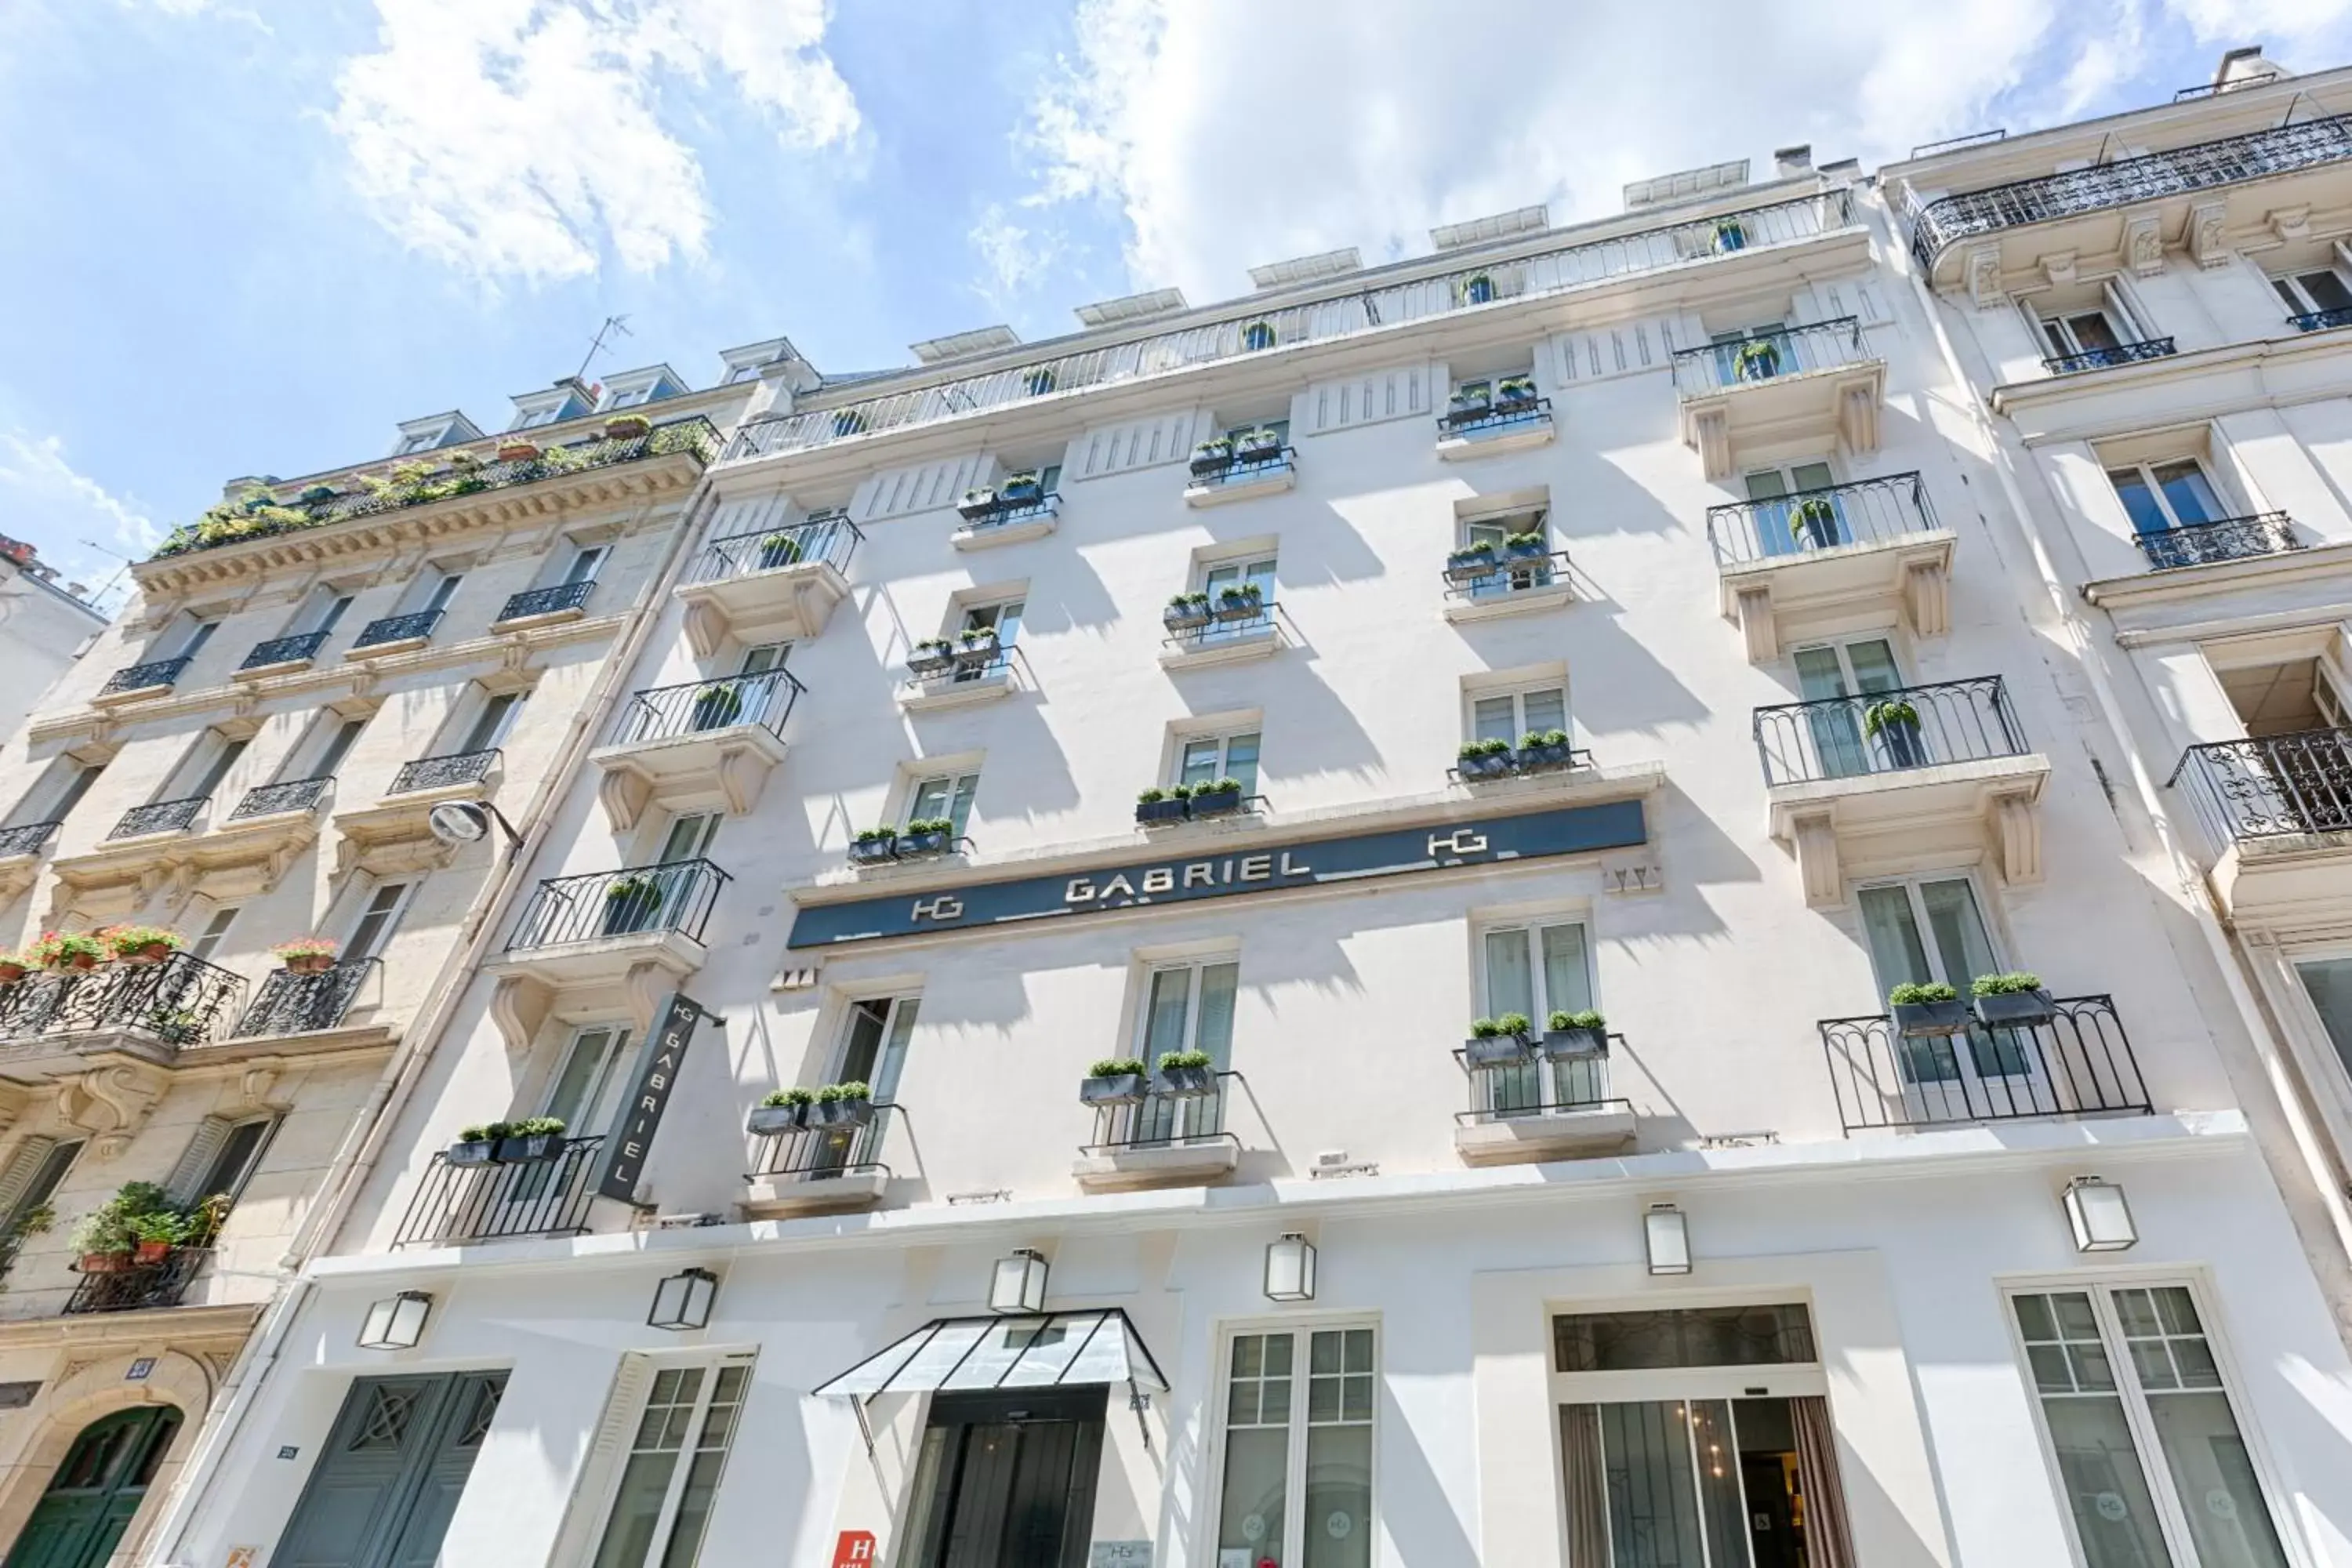 Facade/entrance, Property Building in Hôtel Gabriel Paris